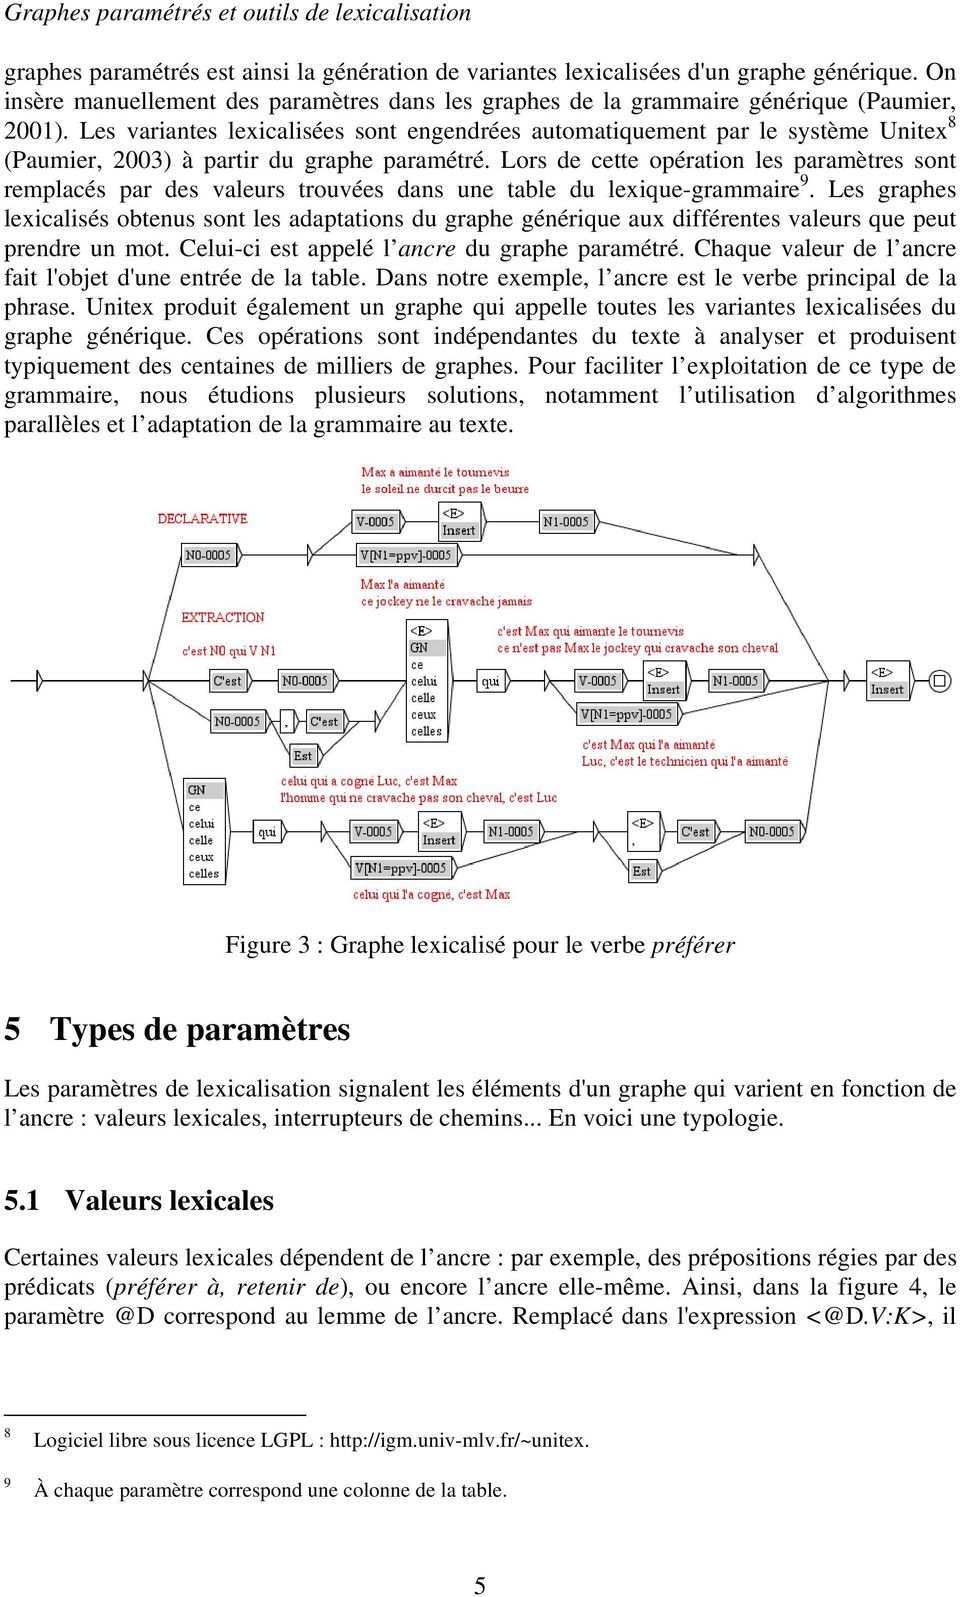 Les variantes lexicalisées sont engendrées automatiquement par le système Unitex 8 (Paumier, 2003) à partir du graphe paramétré.